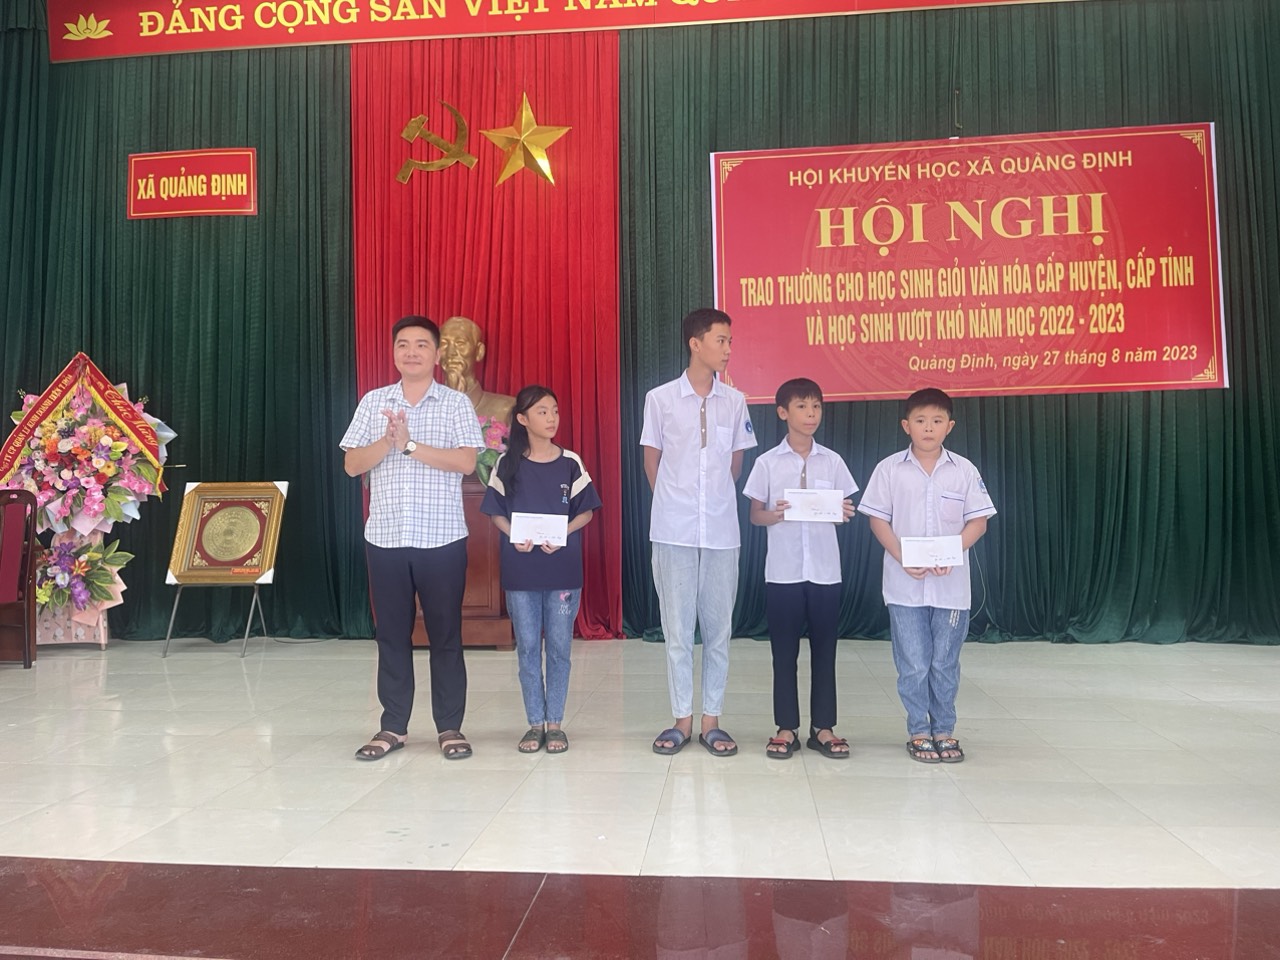 Hội khuyến học xã Quảng Định tổ chức Hội nghị trao thưởng cho học sinh có thành tích cao trong các cuộc thi giao lưu văn hóa cấp huyện, tỉnh và học sinh vượt khó năm học 2022- 2023